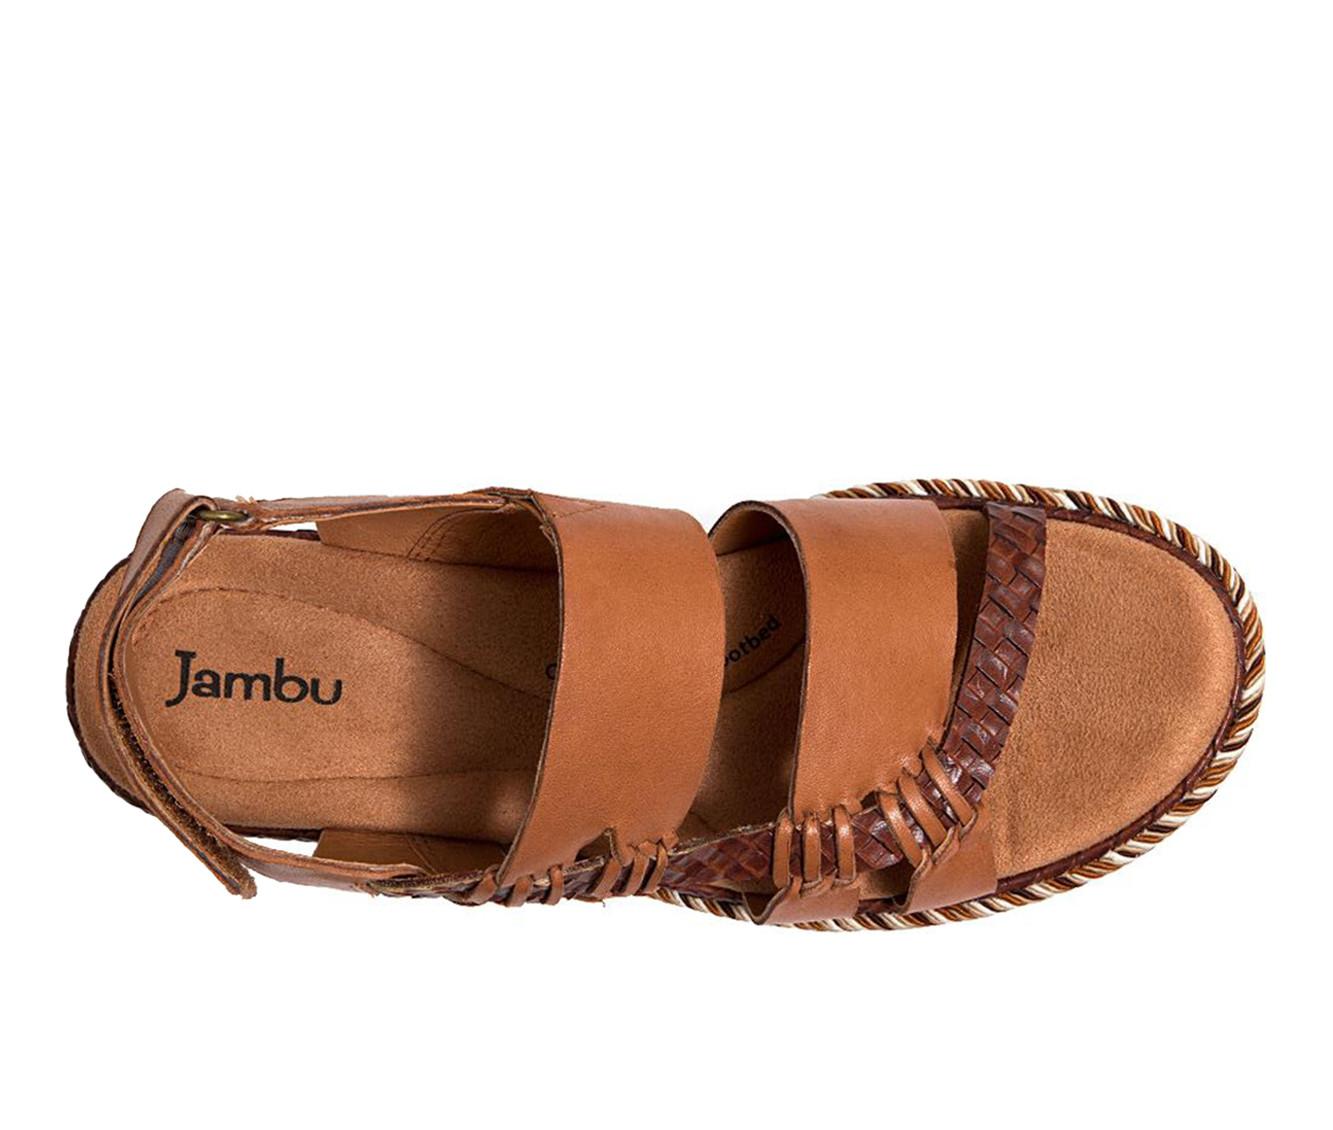 Women's Jambu Delight Wedge Sandals